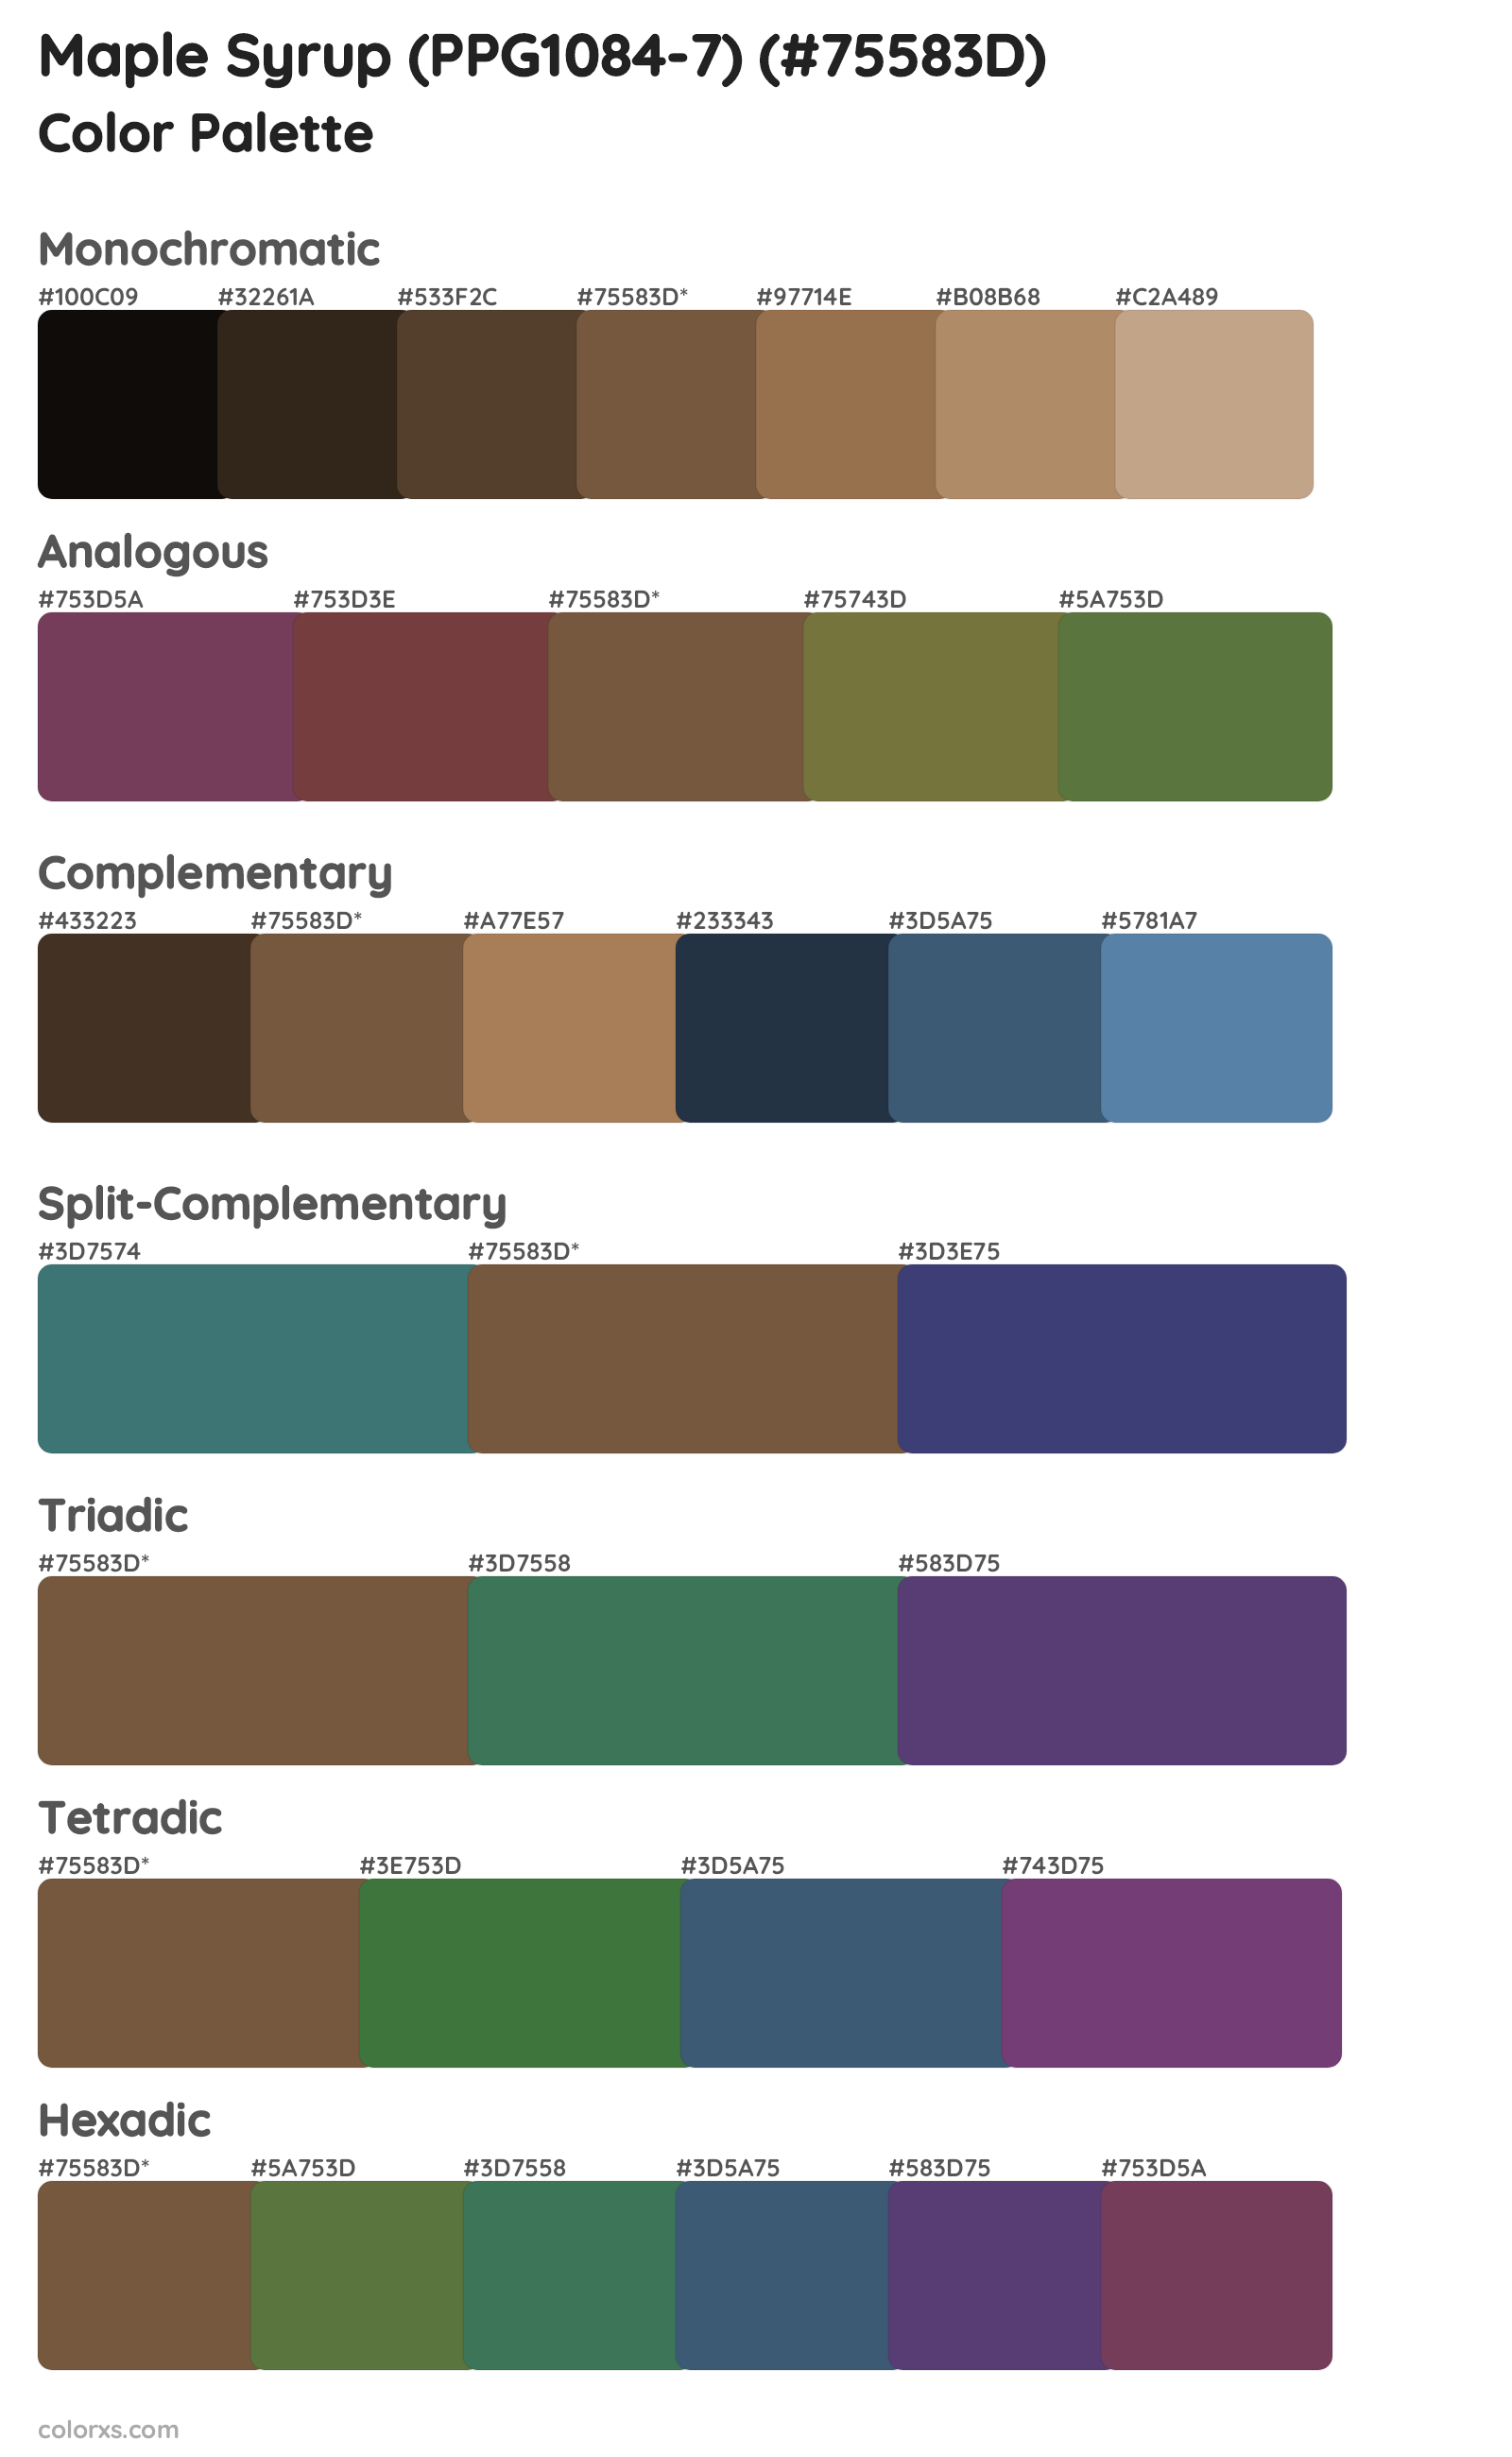 Maple Syrup (PPG1084-7) Color Scheme Palettes